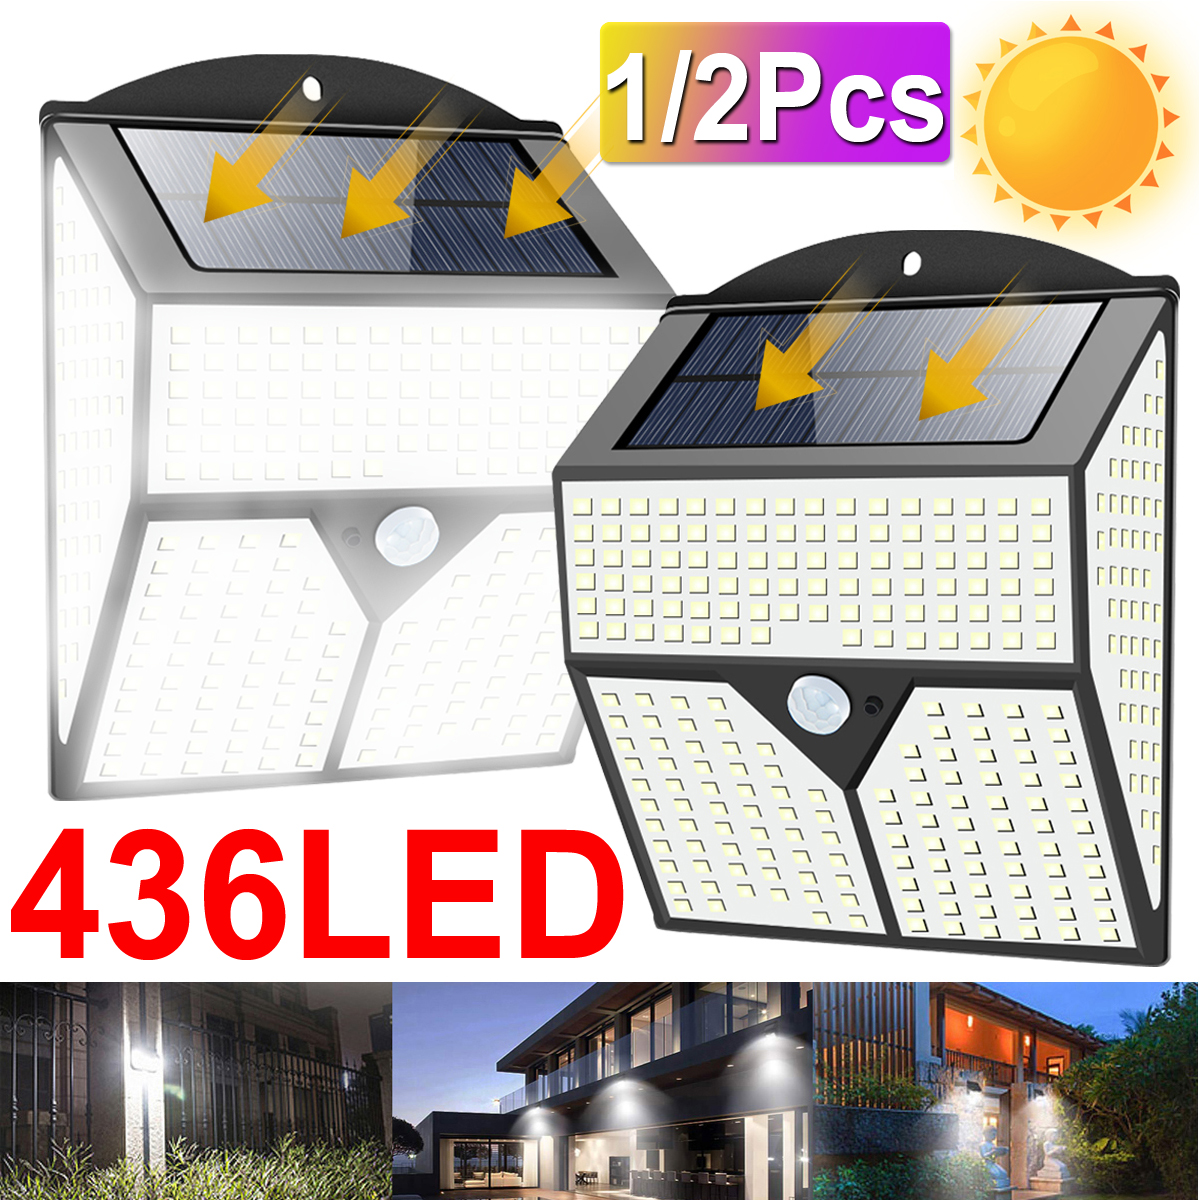 12Pcs-436LED-Solar-Light-Infrared-Motion-Sensor-Garden-Security-Wall-Light-New-1735594-1